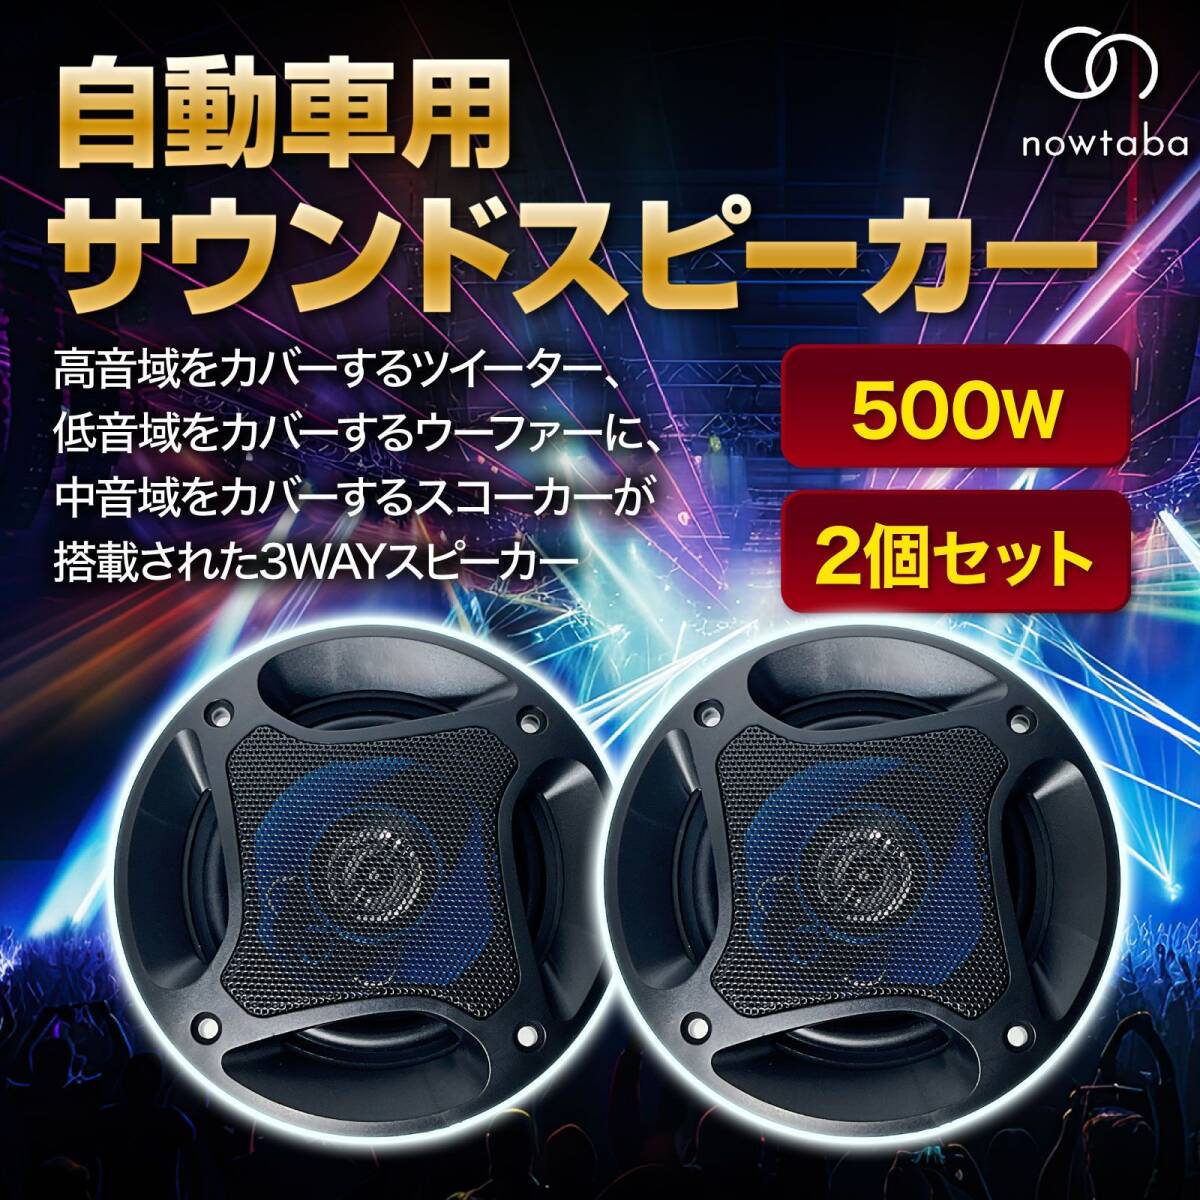 nowtaba スピーカー 車 サブウーファー カースピーカー ツイーター speaker ユニット サテライト カーオーディオ 車載 車用 16cm 500Wの画像2